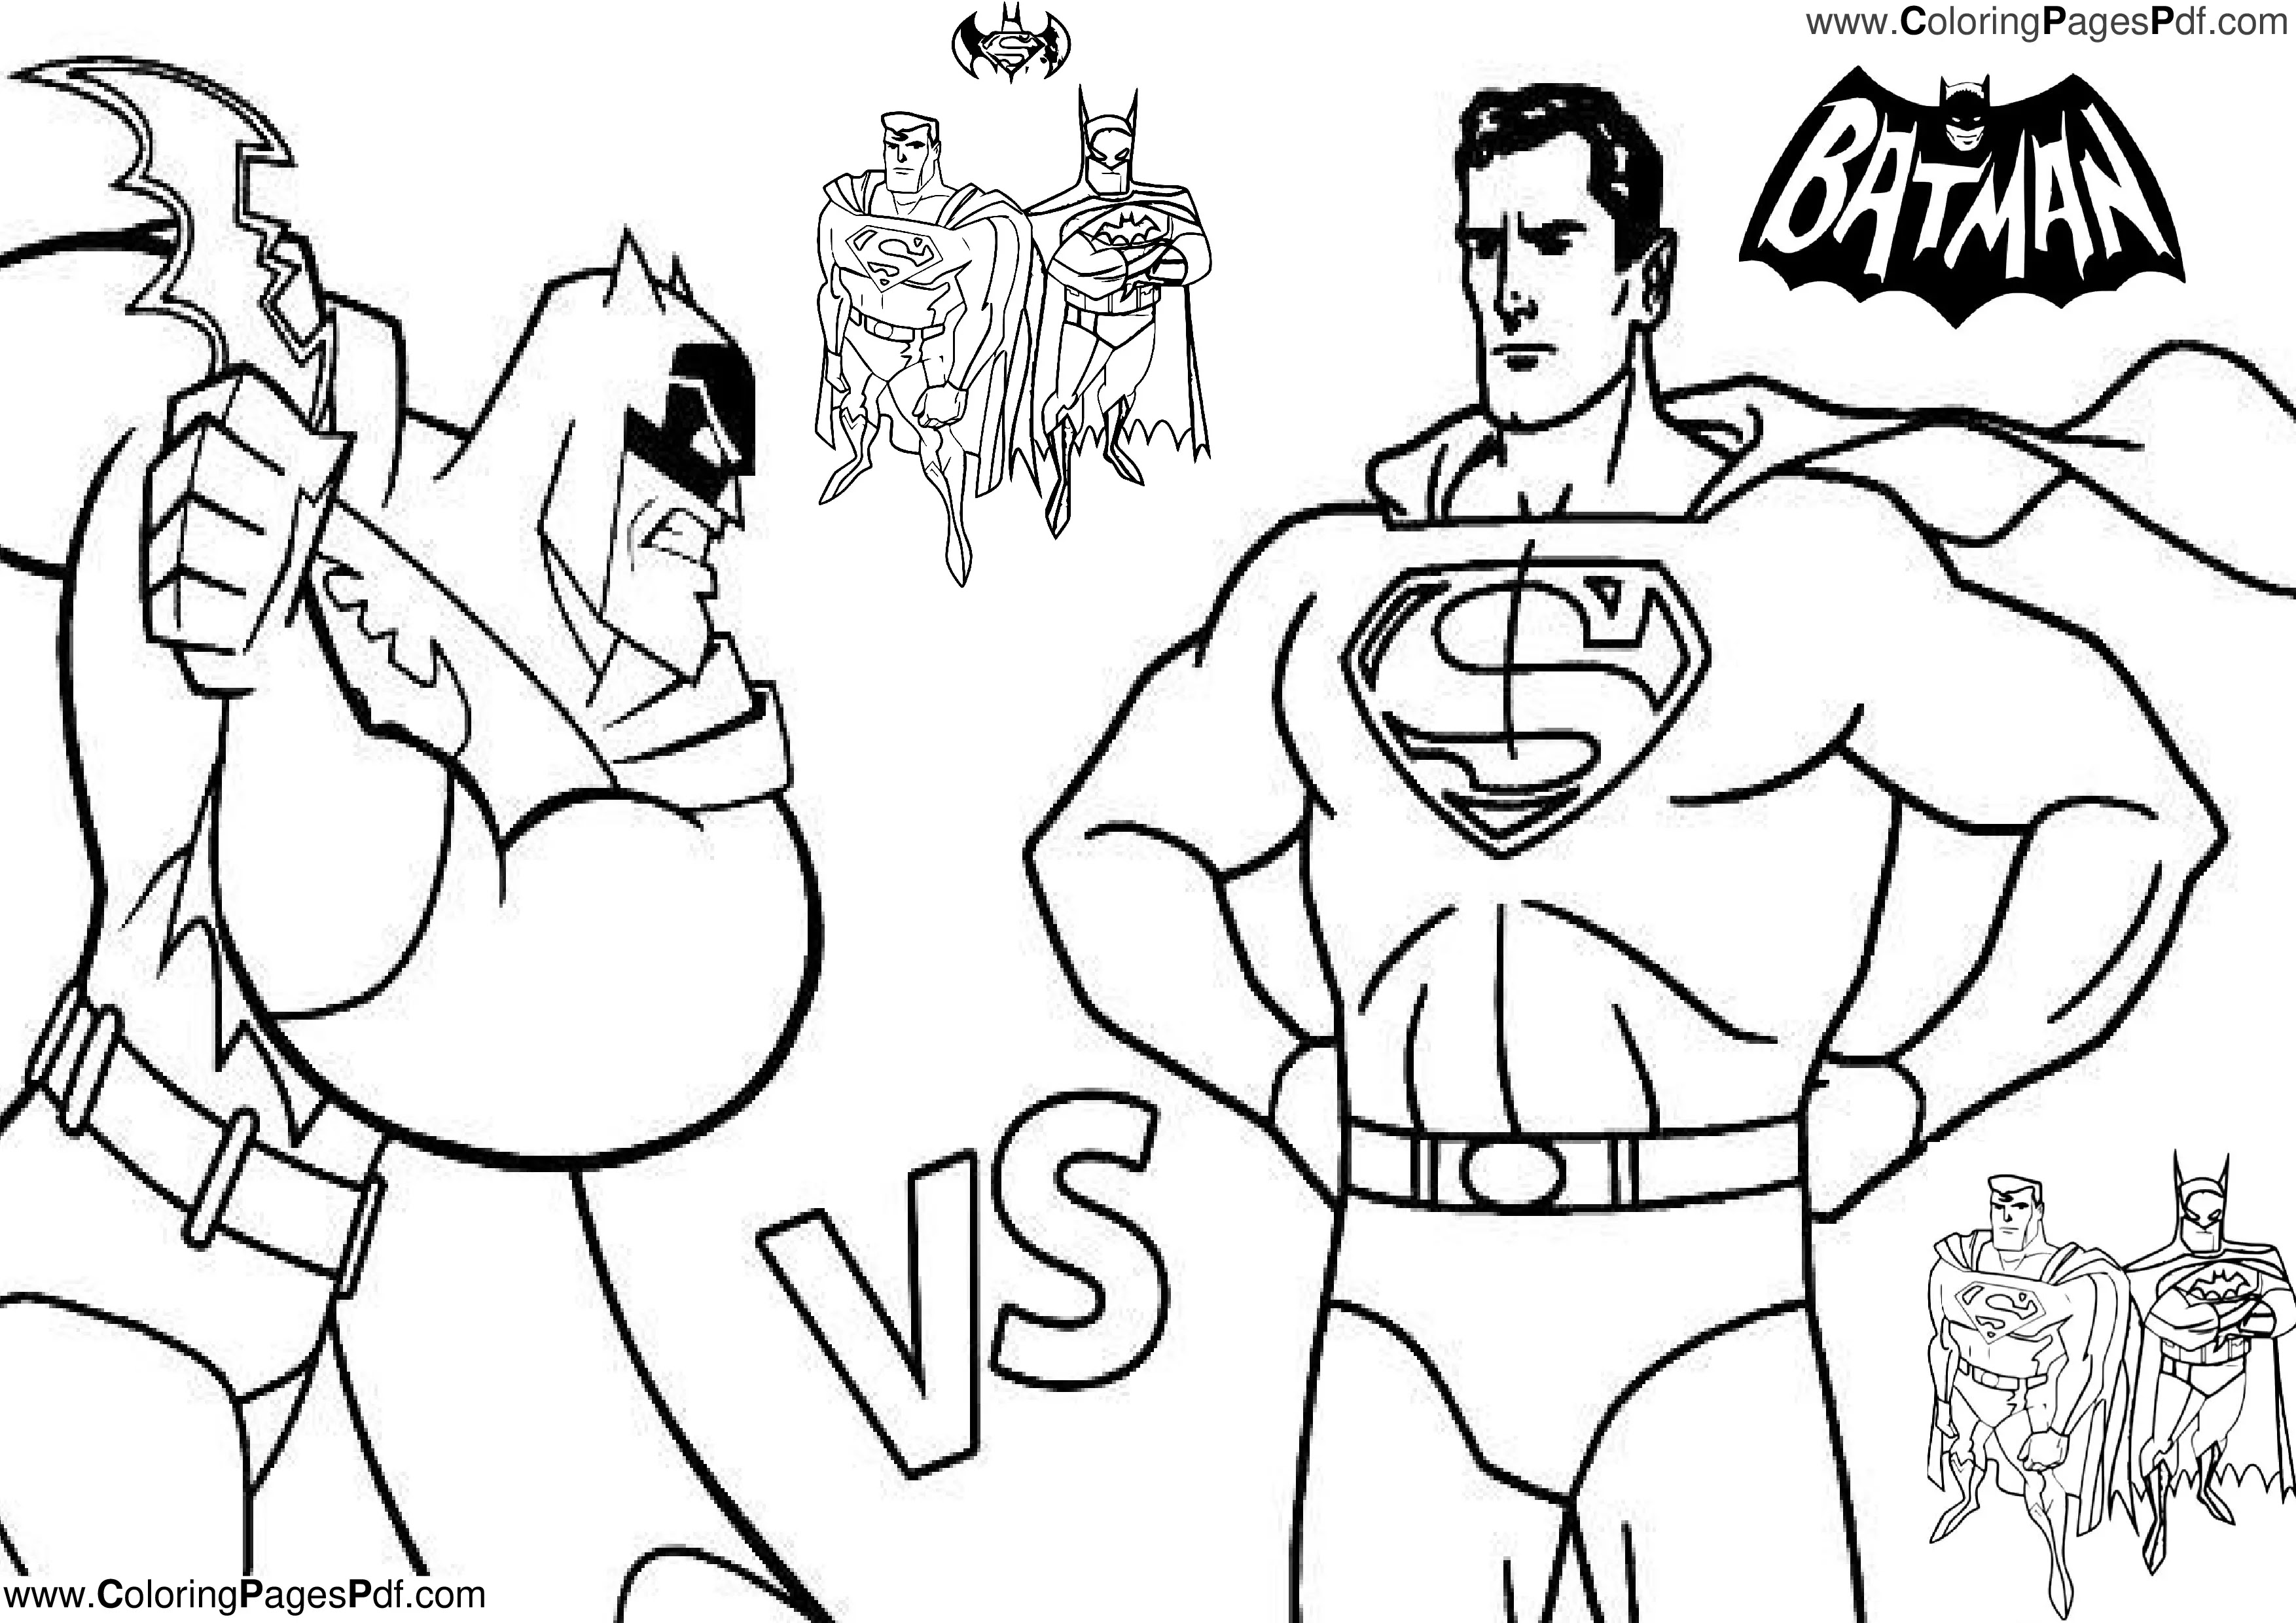 Superman & batman coloring pages